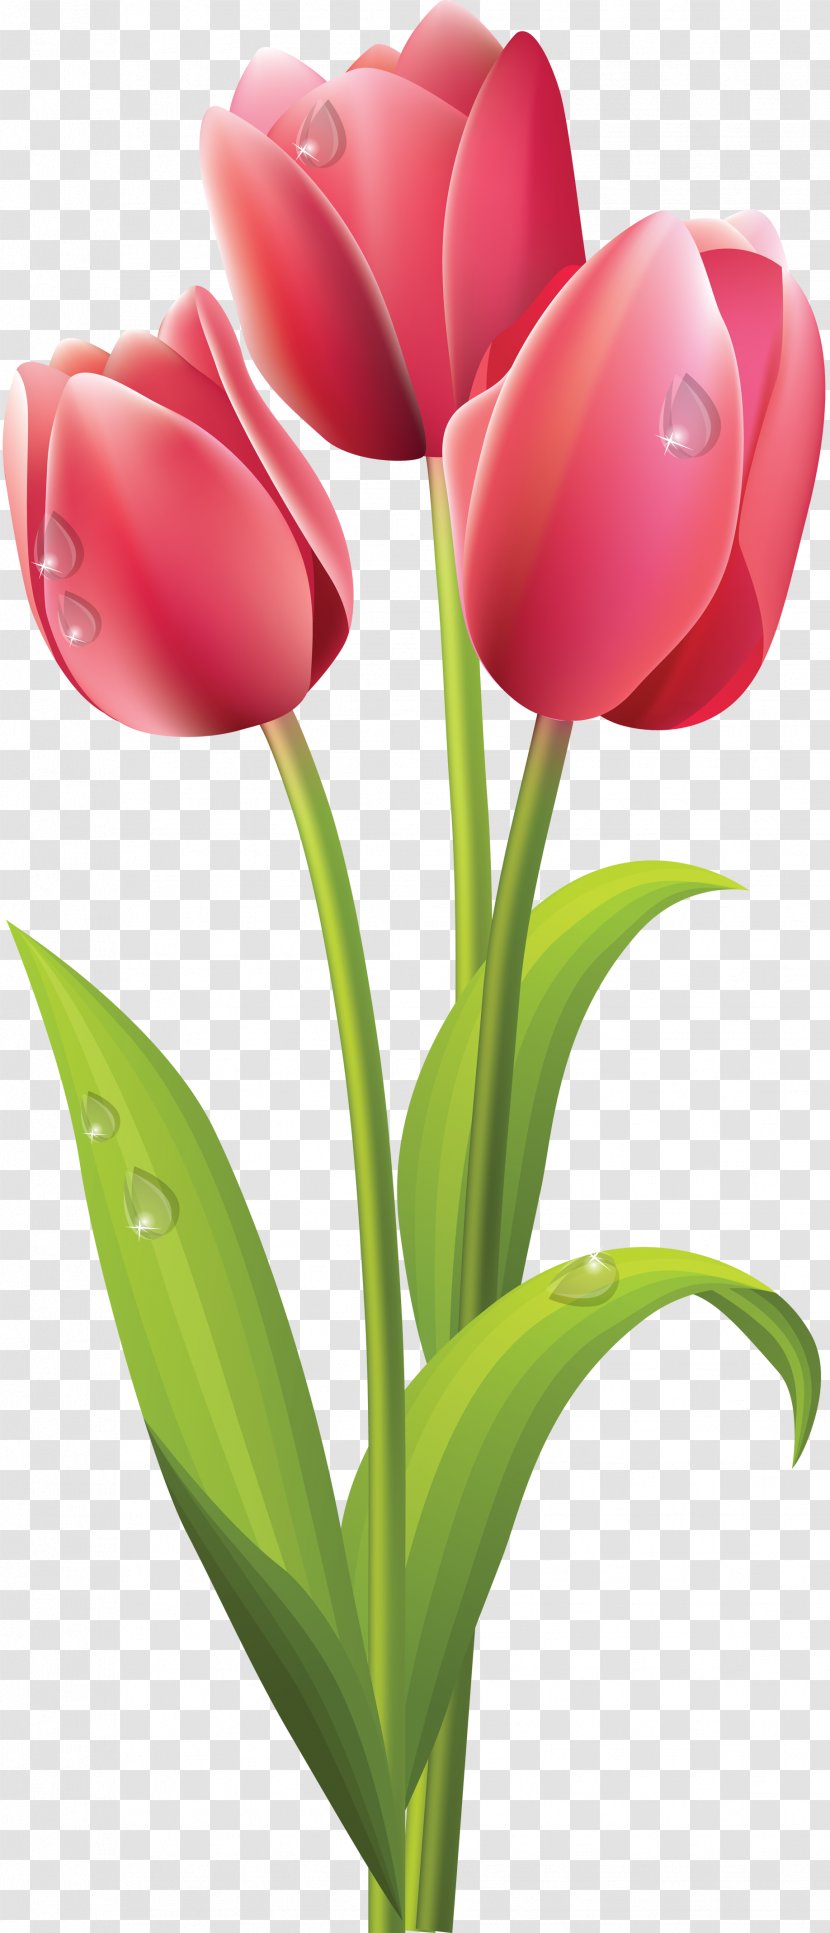 Tulip Flower Bouquet Clip Art - Free Transparent PNG